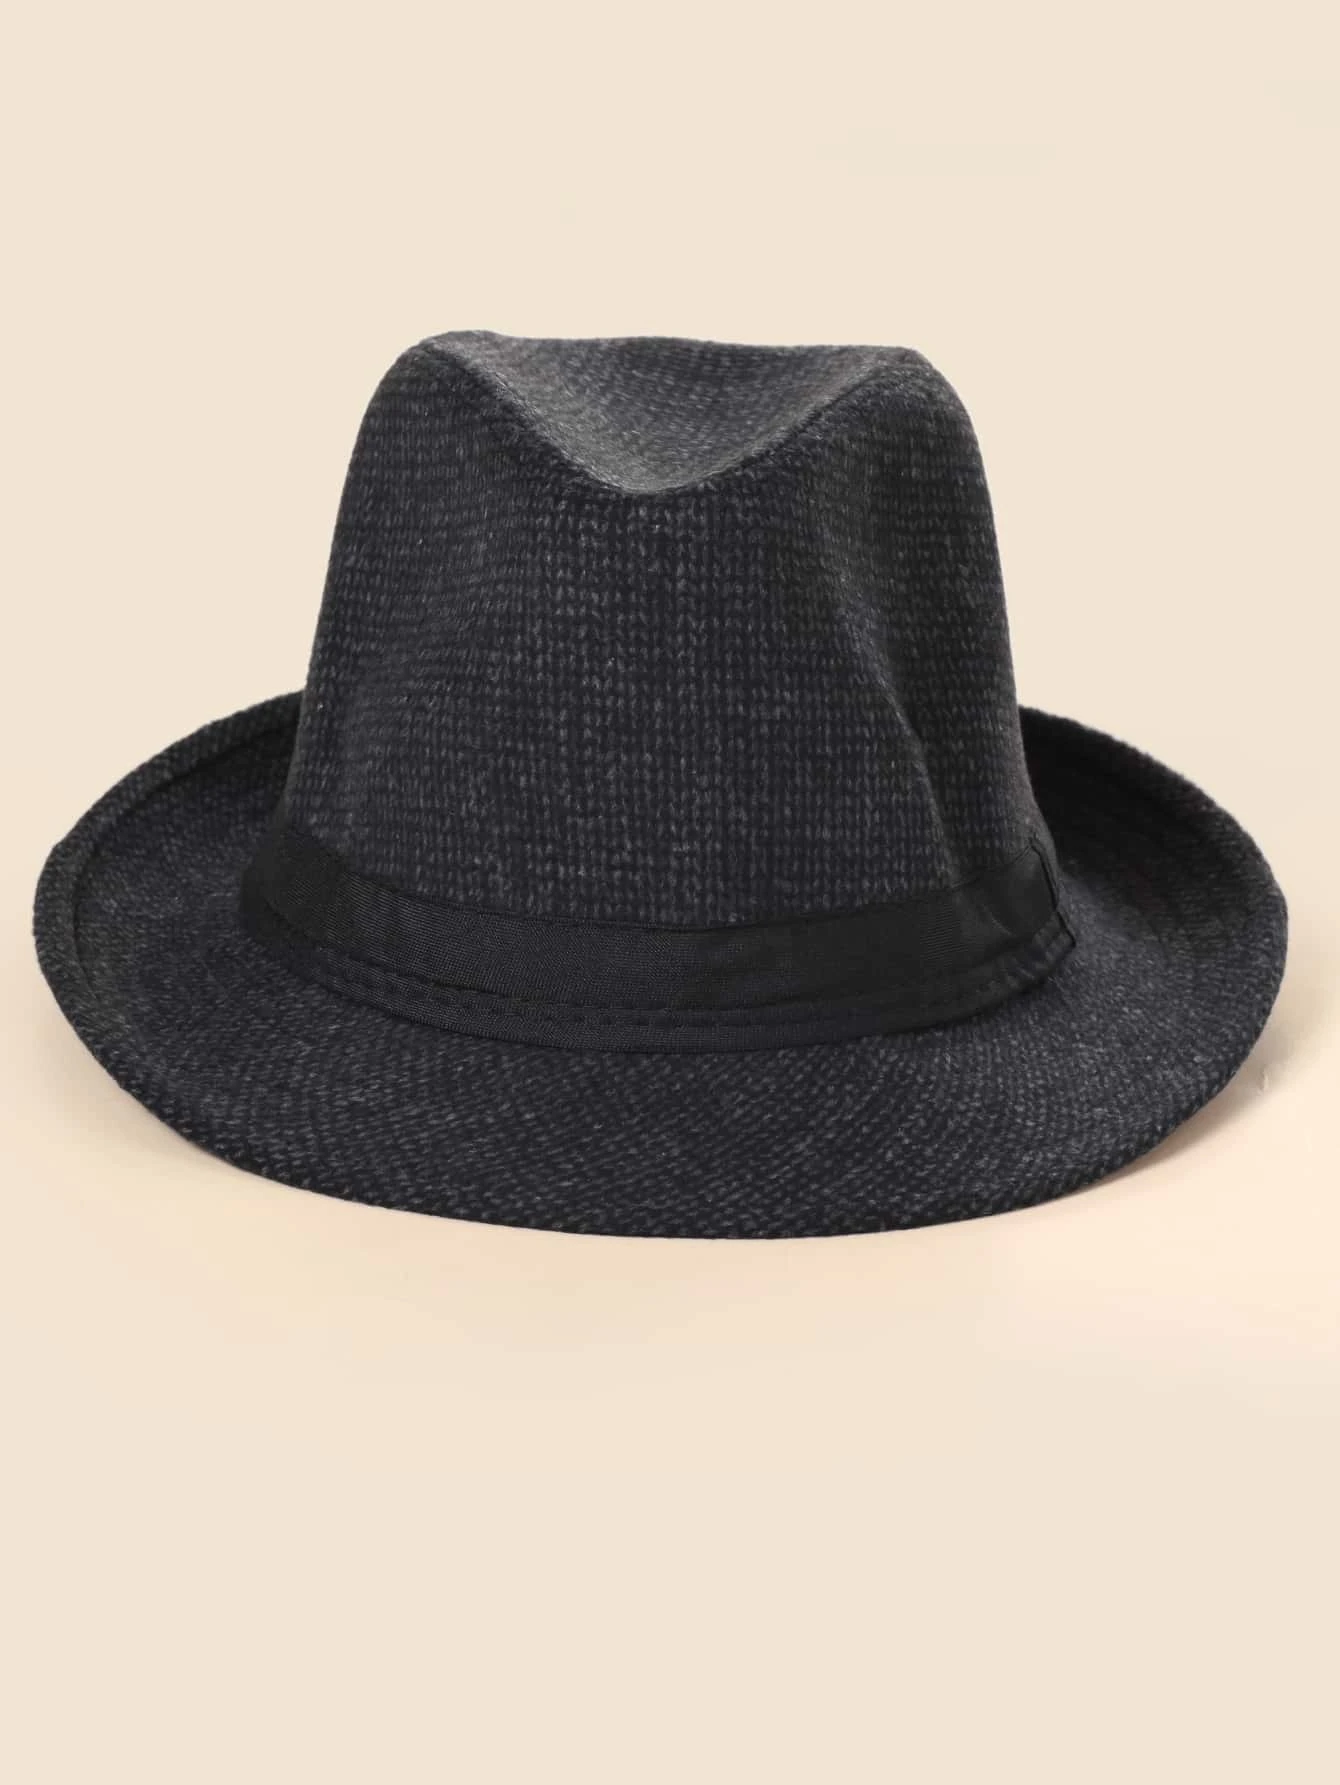 Ανδρικό καπέλο μαύρο Fedora